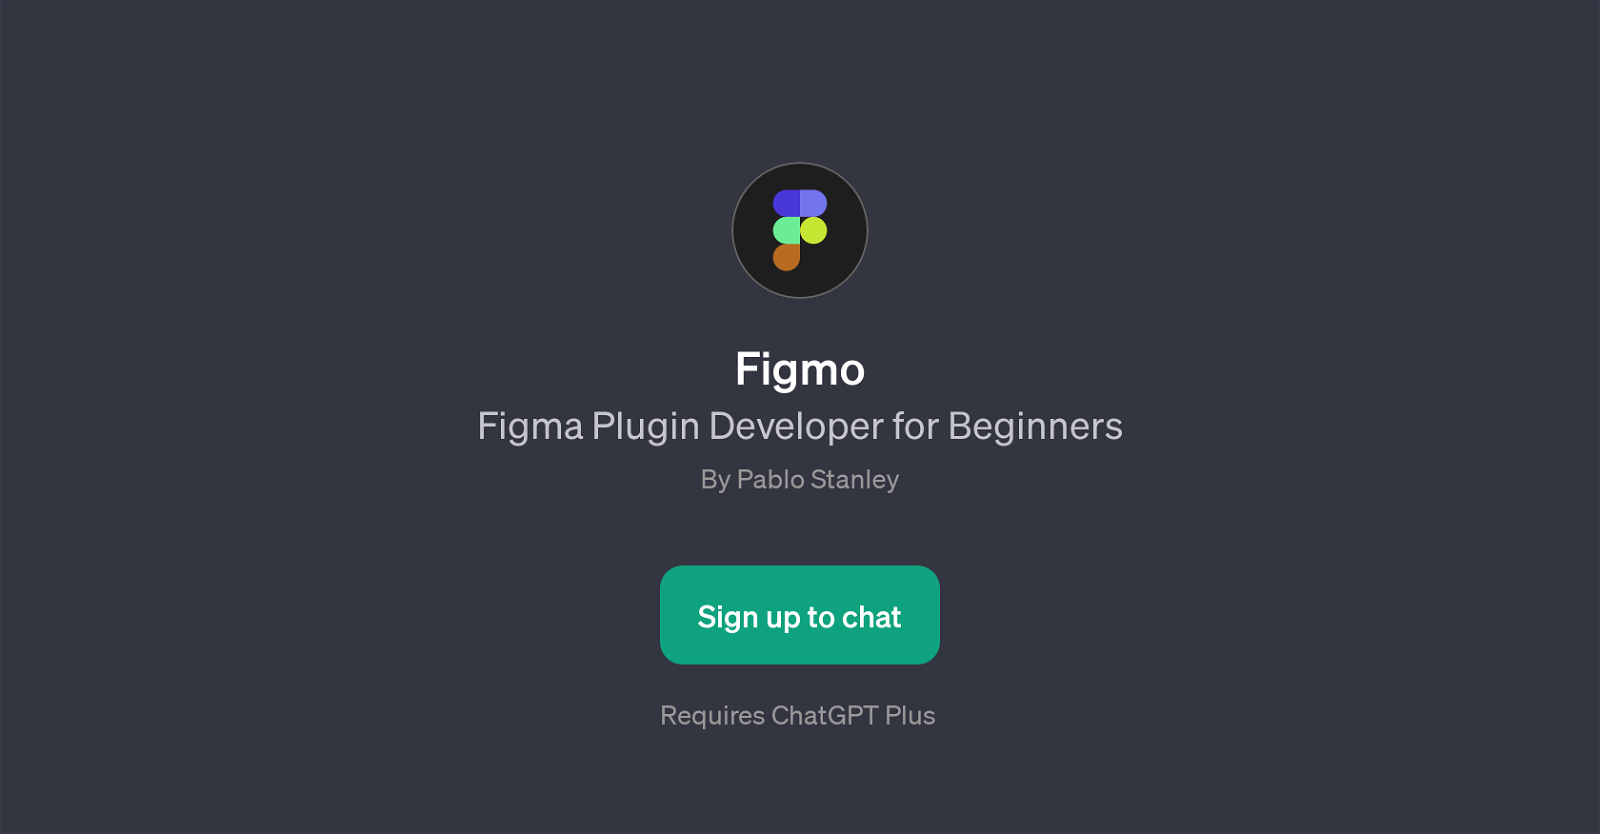 Figmo website